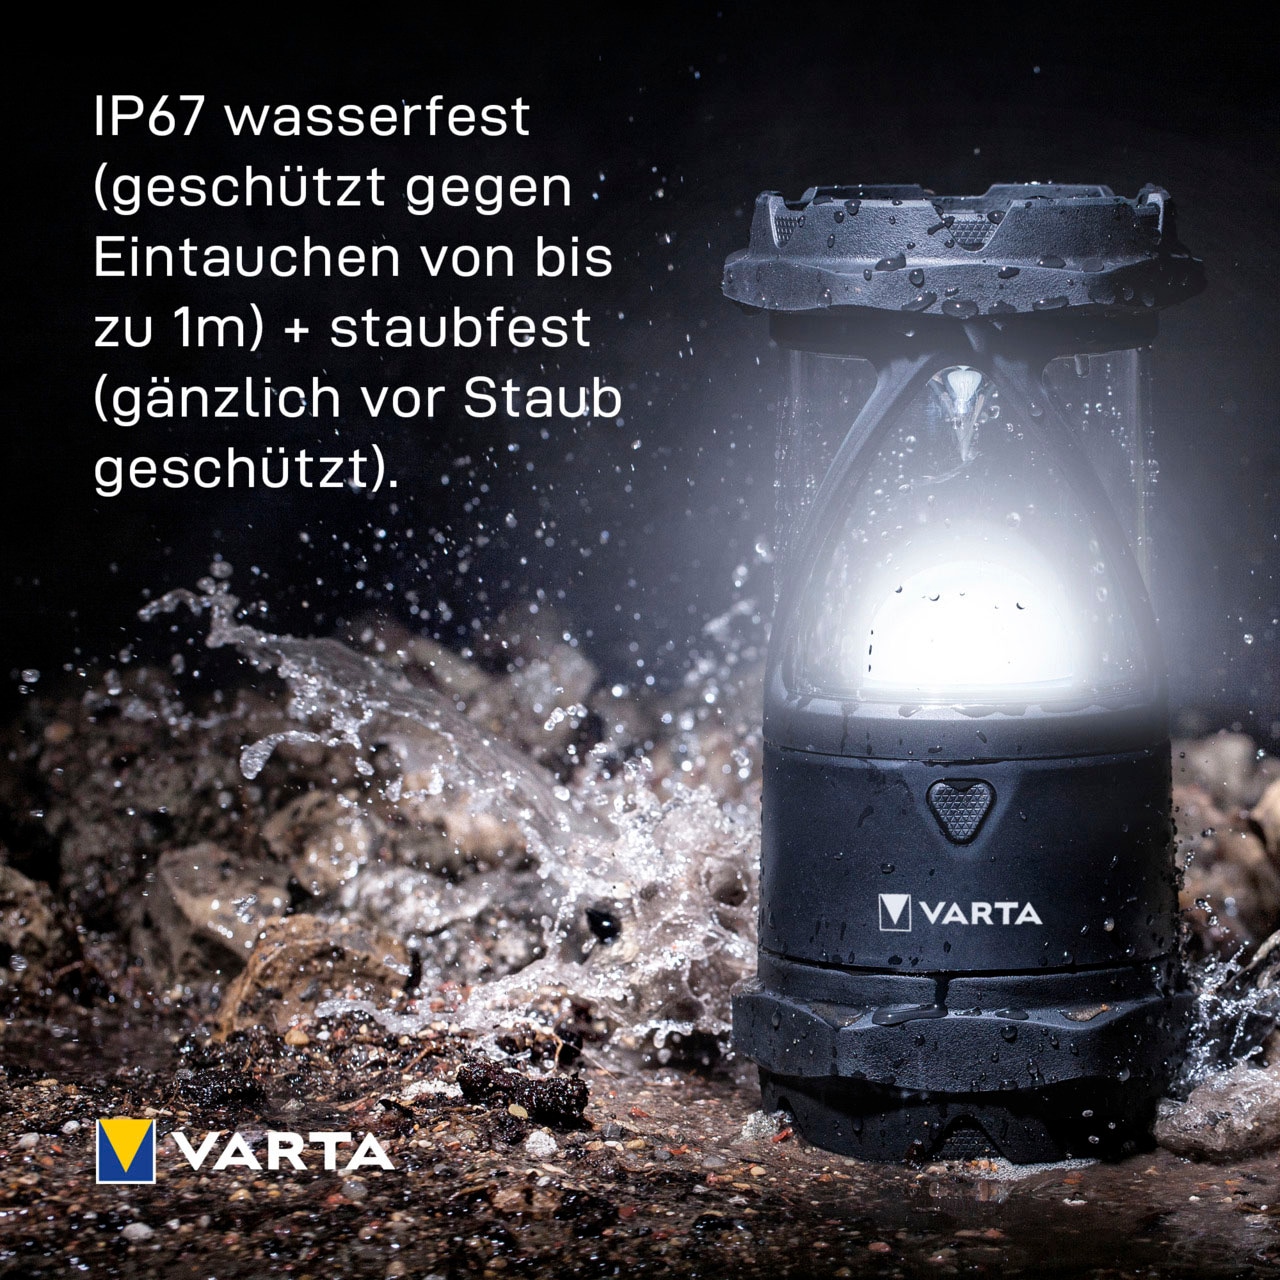 VARTA Laterne »Indestructible L30 Pro COB LED«, wasser- und staubdicht,stoßabsorbierend,bruchfeste Linse und Reflektor